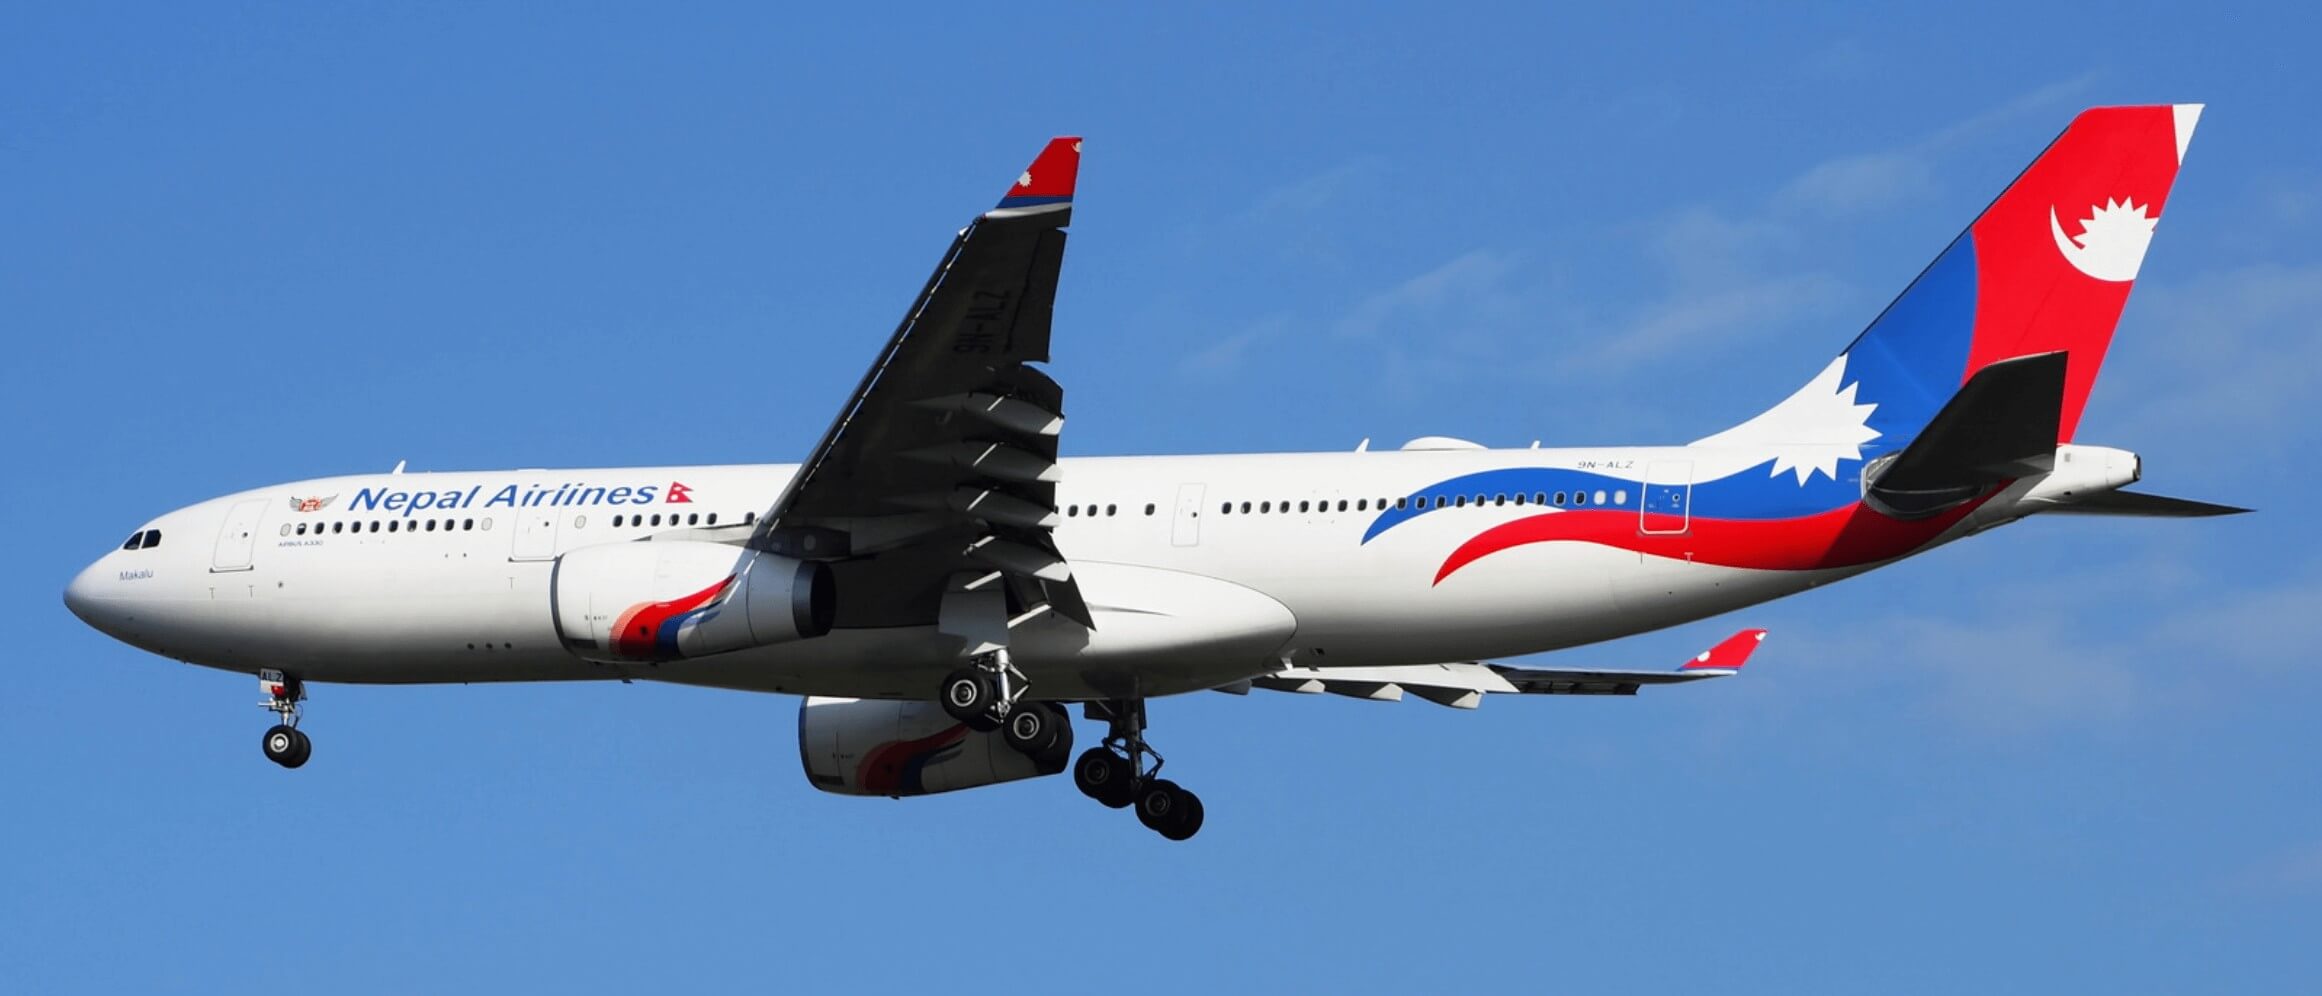 नेपाल एयरलाइन्सको सम्पत्ती ५४ अर्ब १७ करोड, ऋण ४५ अर्ब ५४ करोड